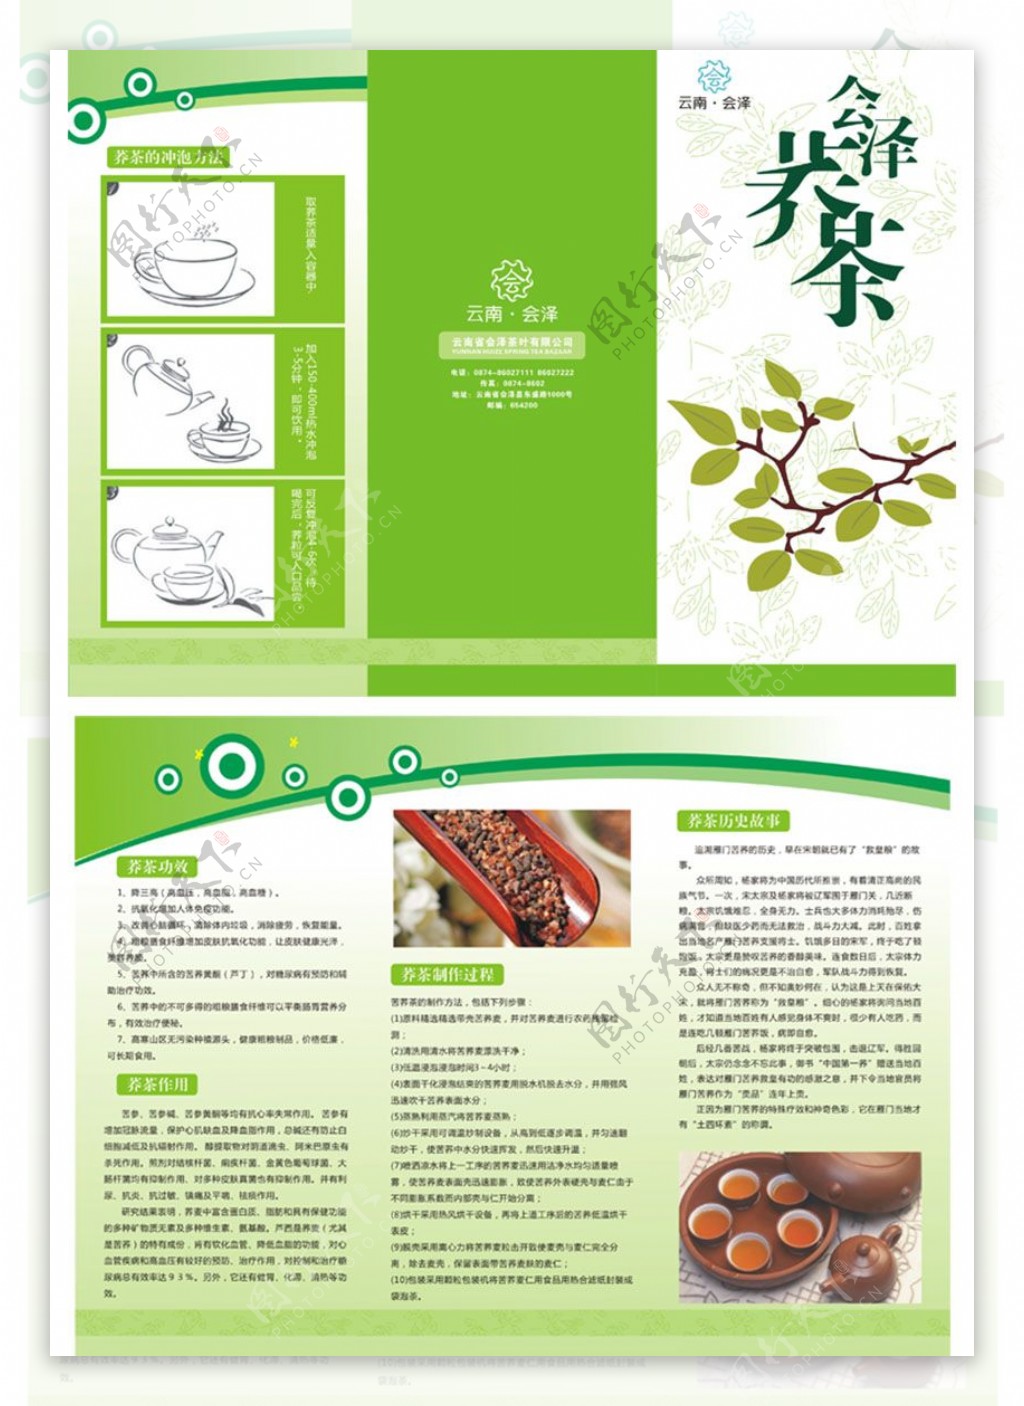 茶文化茶室宣传三折页设计模板cdr